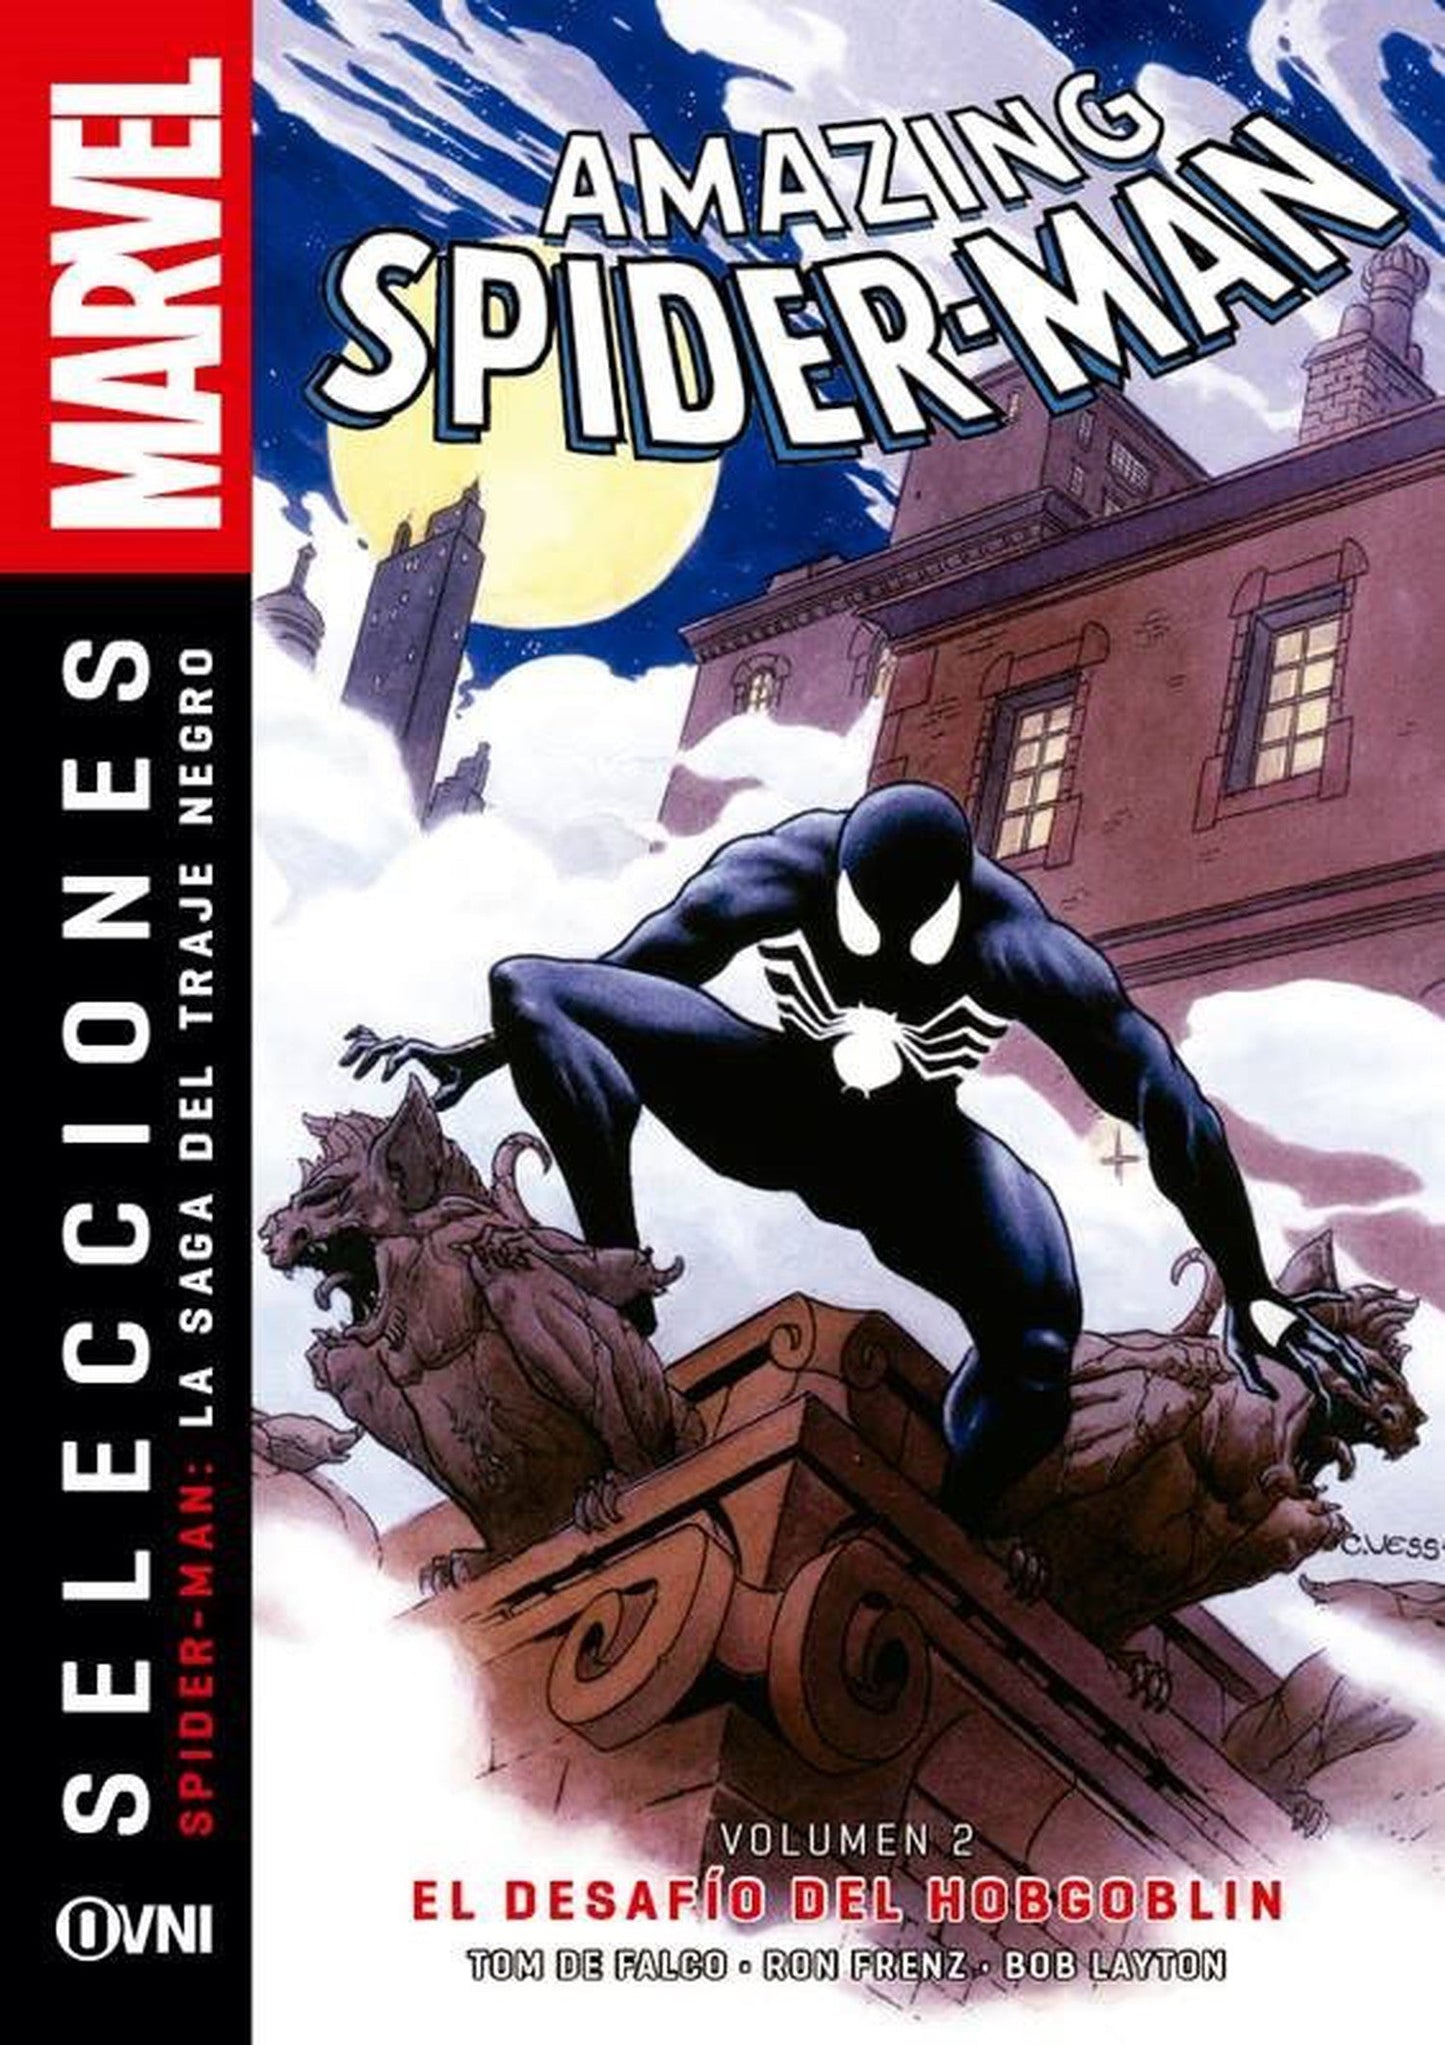 Spider-Man "La Saga del Traje Negro" [2 de 4]: El Desafío del Hobgoblin OVNI Press ENcuadrocomics